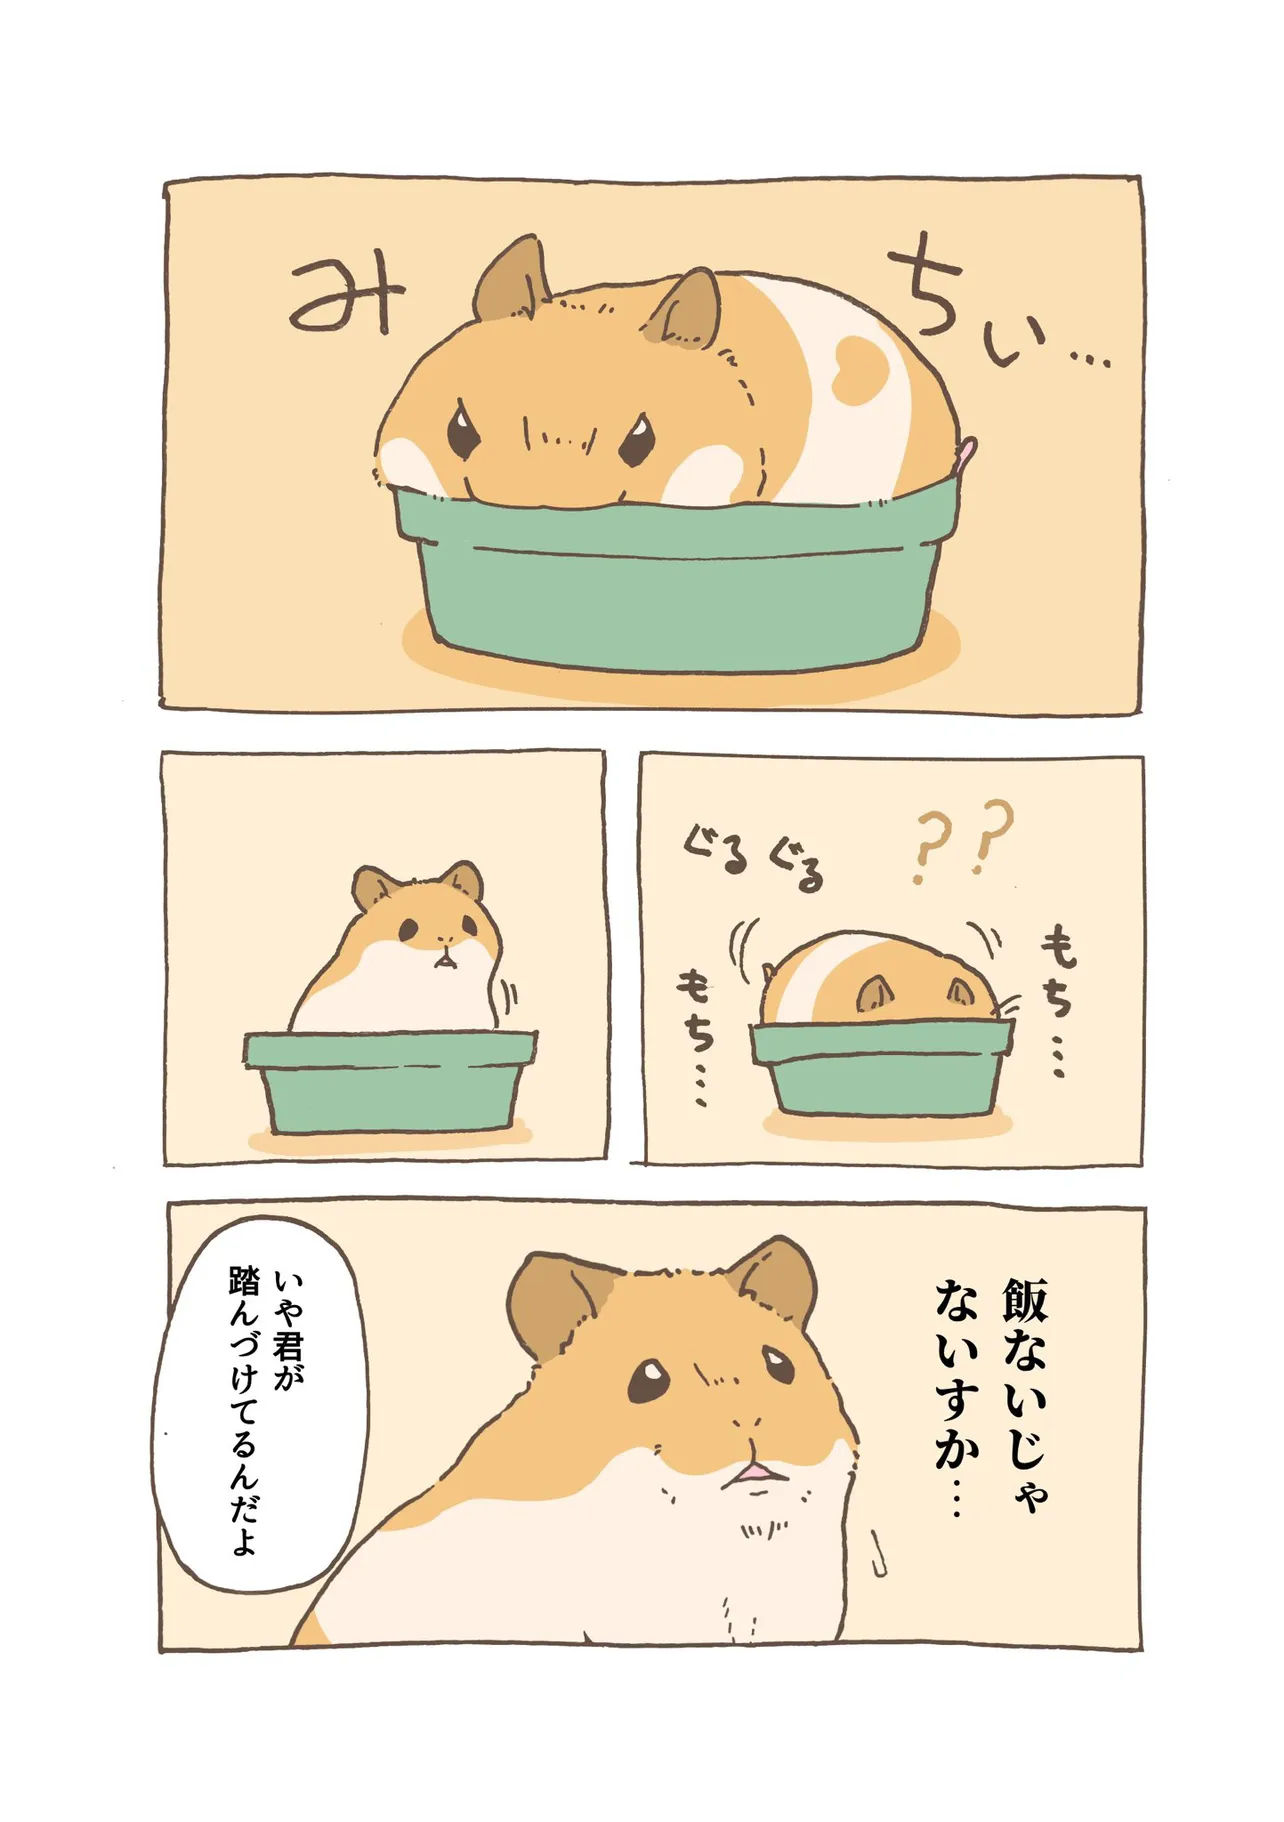 『ハムスターとご飯皿』(3)